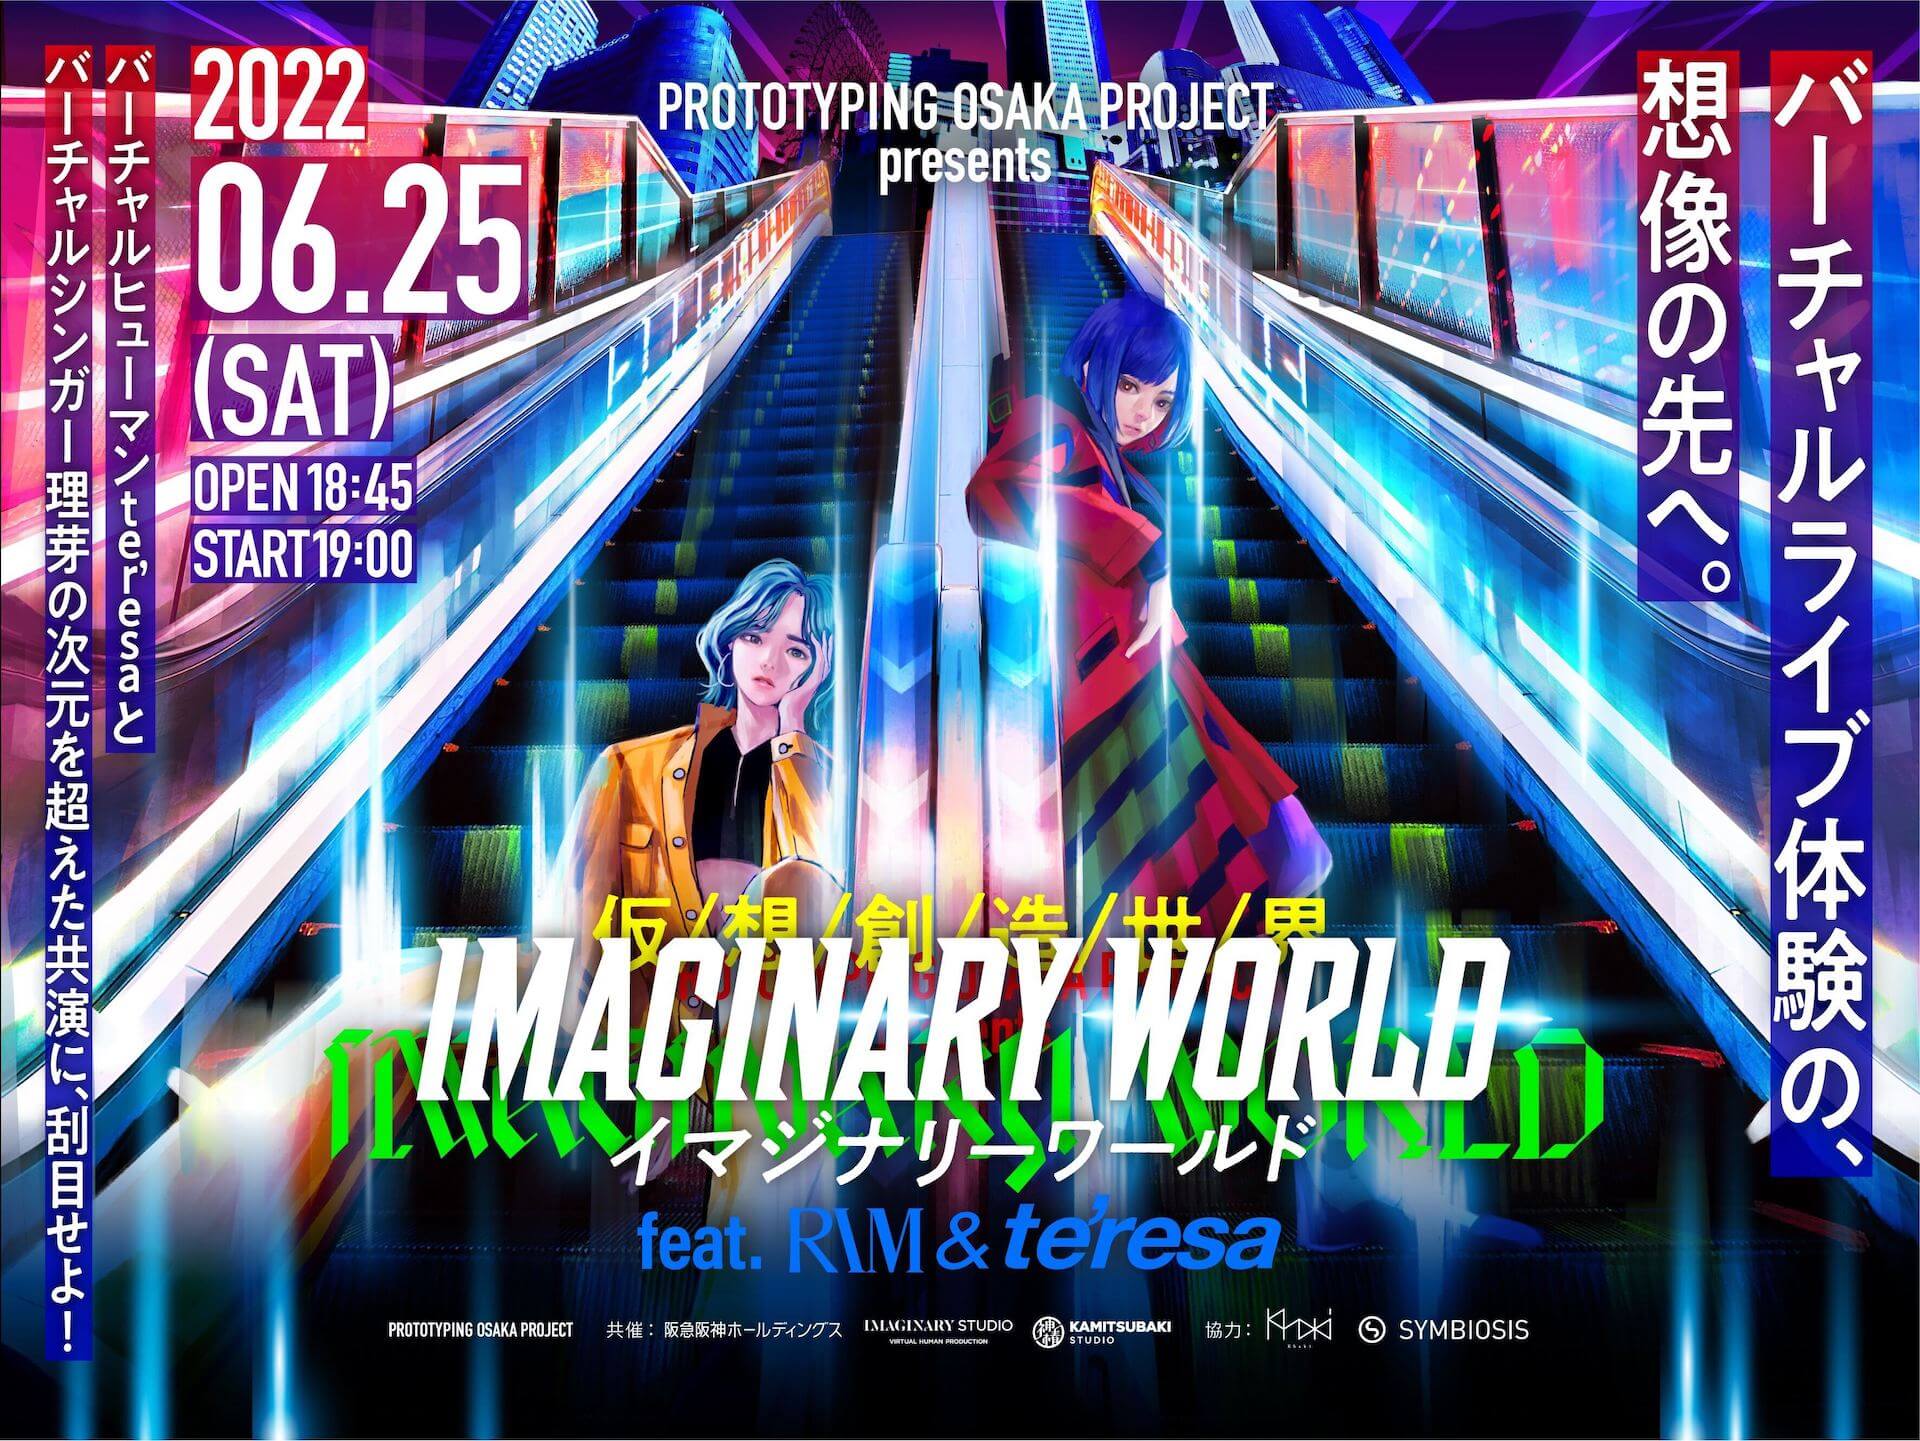 理芽、te’resa初となる2マン バーチャルライブ「IMAGINARY WORLD」開催決定 music220526-rim-teresa-1